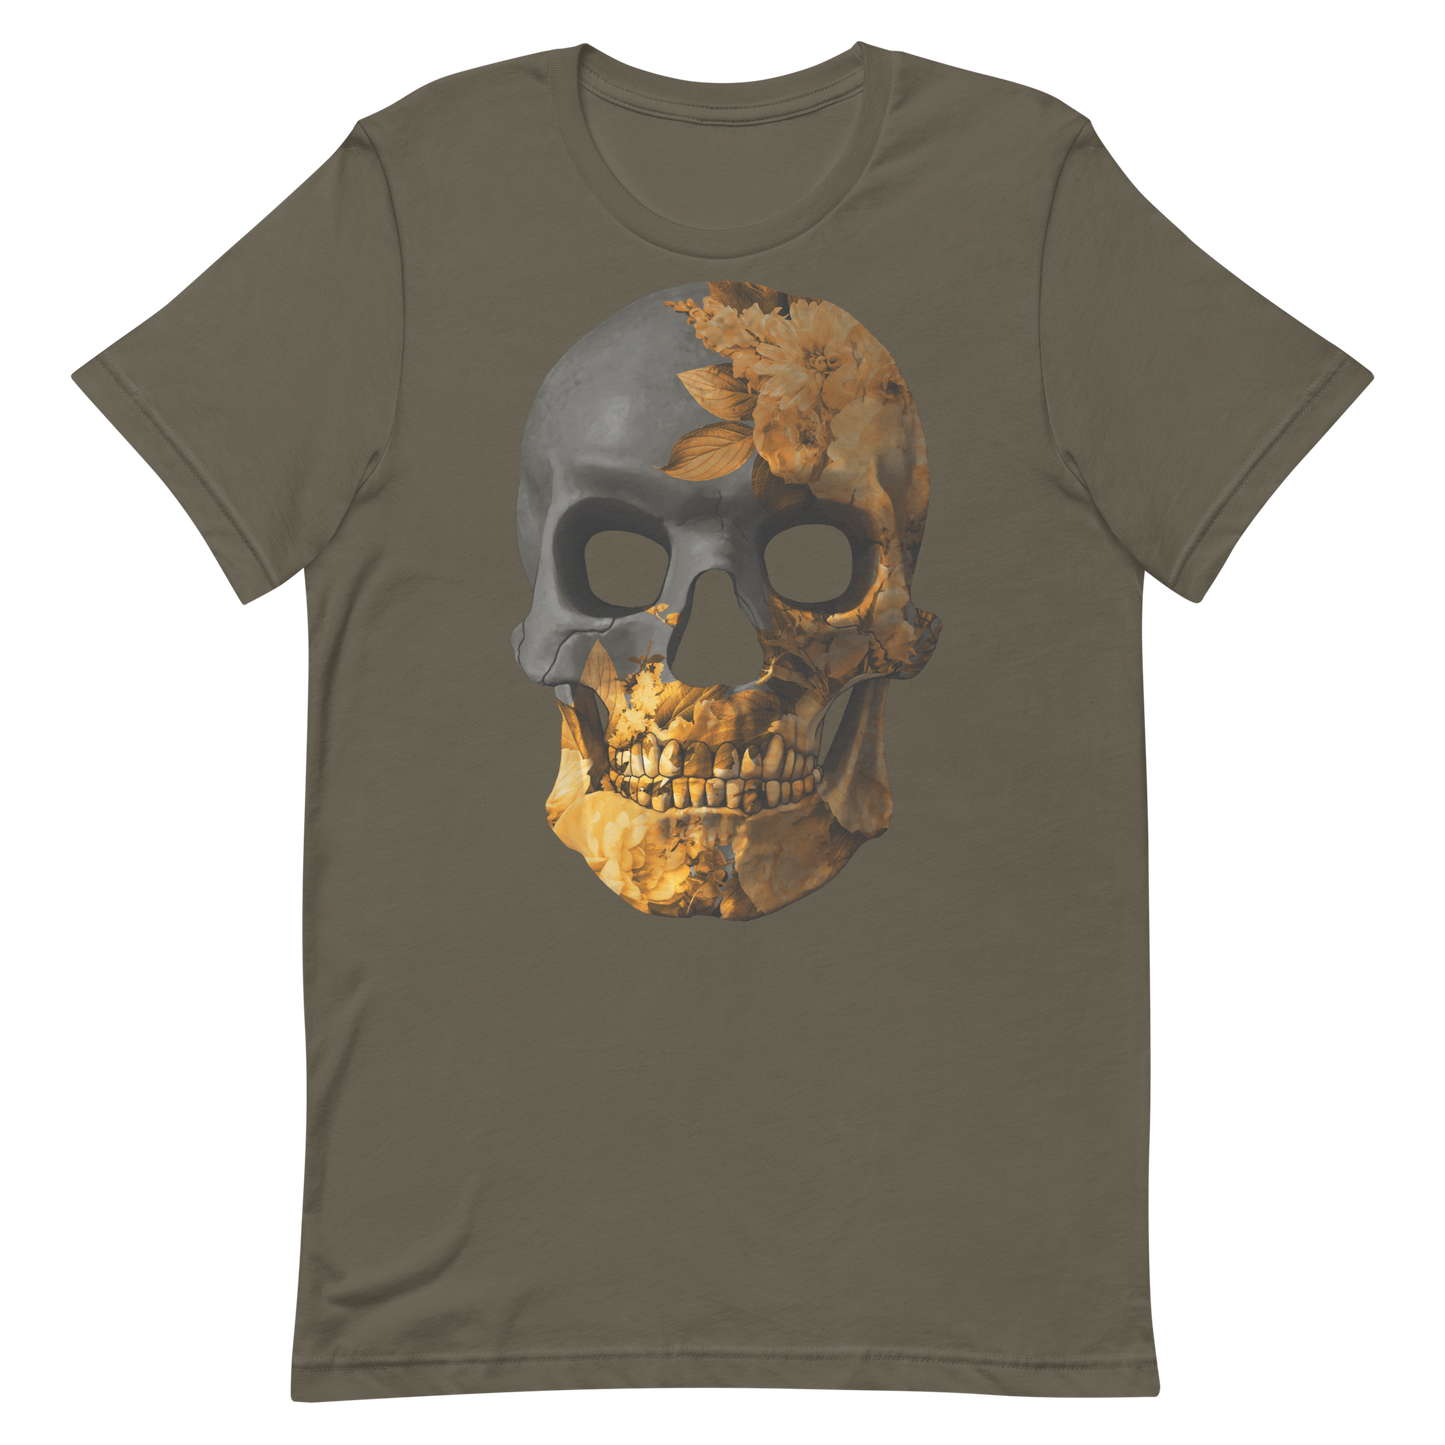 The Flower Skull motorcycle t-shirt 041